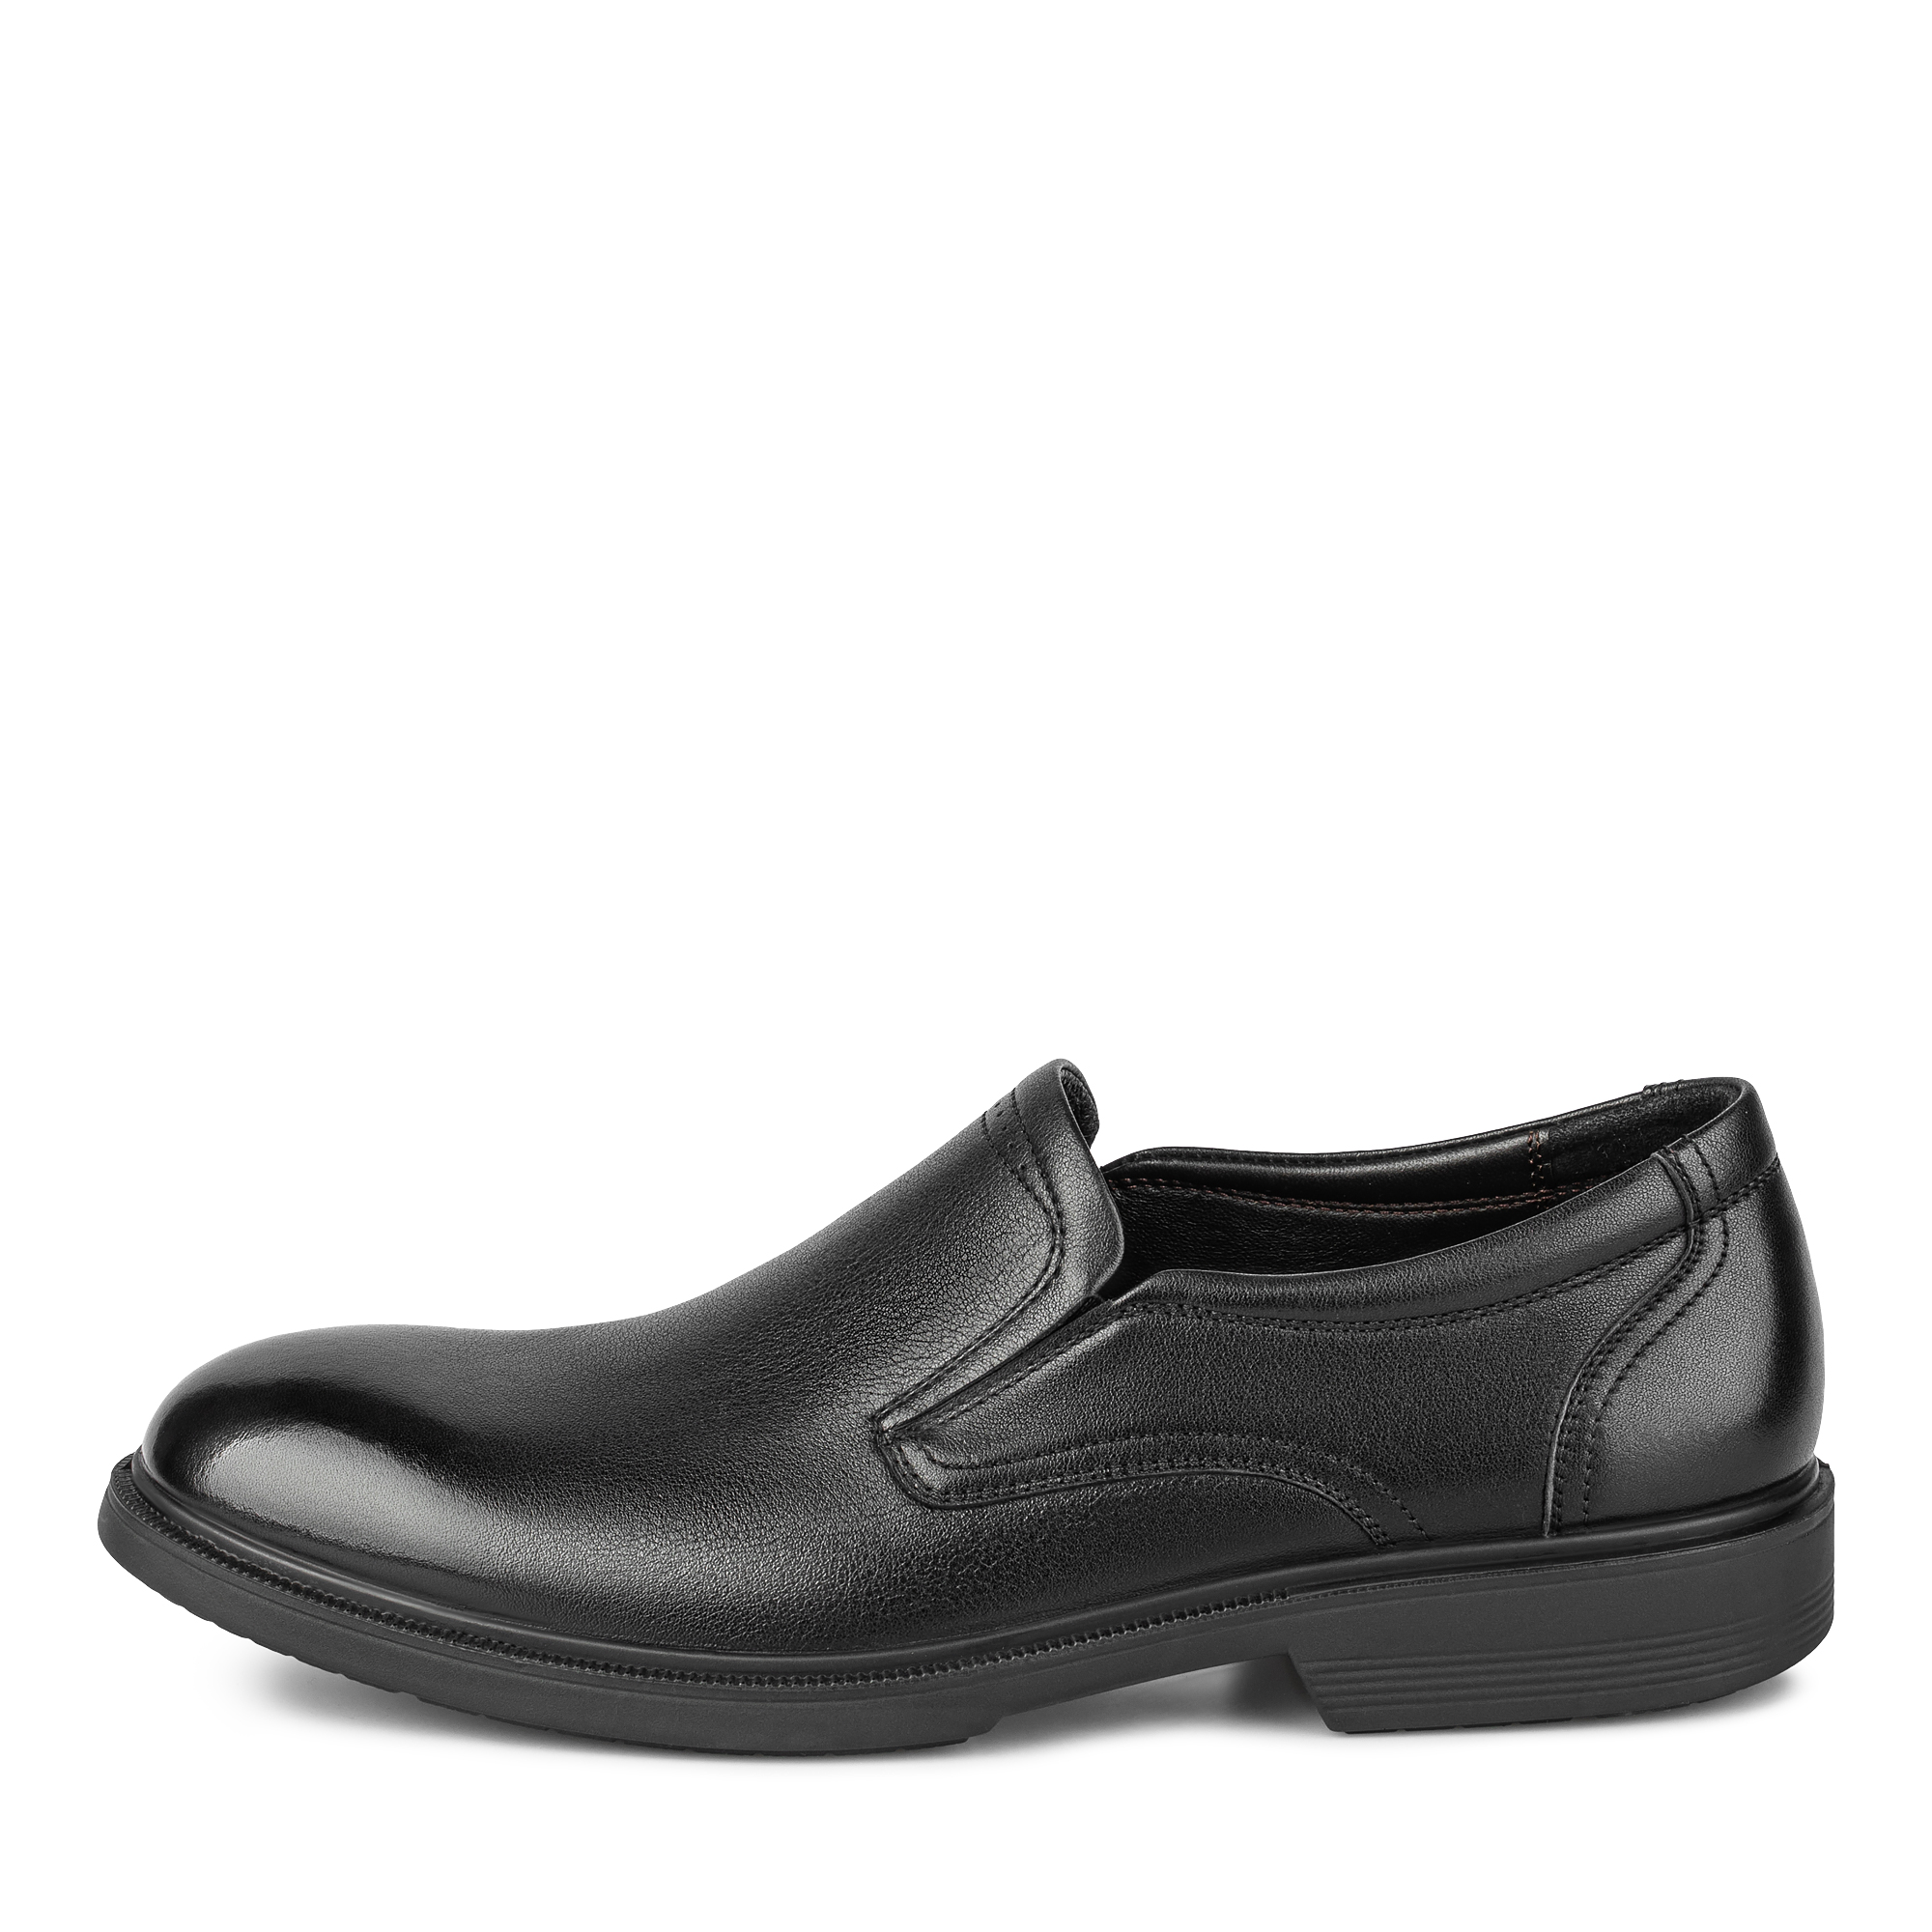 Туфли/полуботинки Salamander 104-595A-1102, цвет черный, размер 39